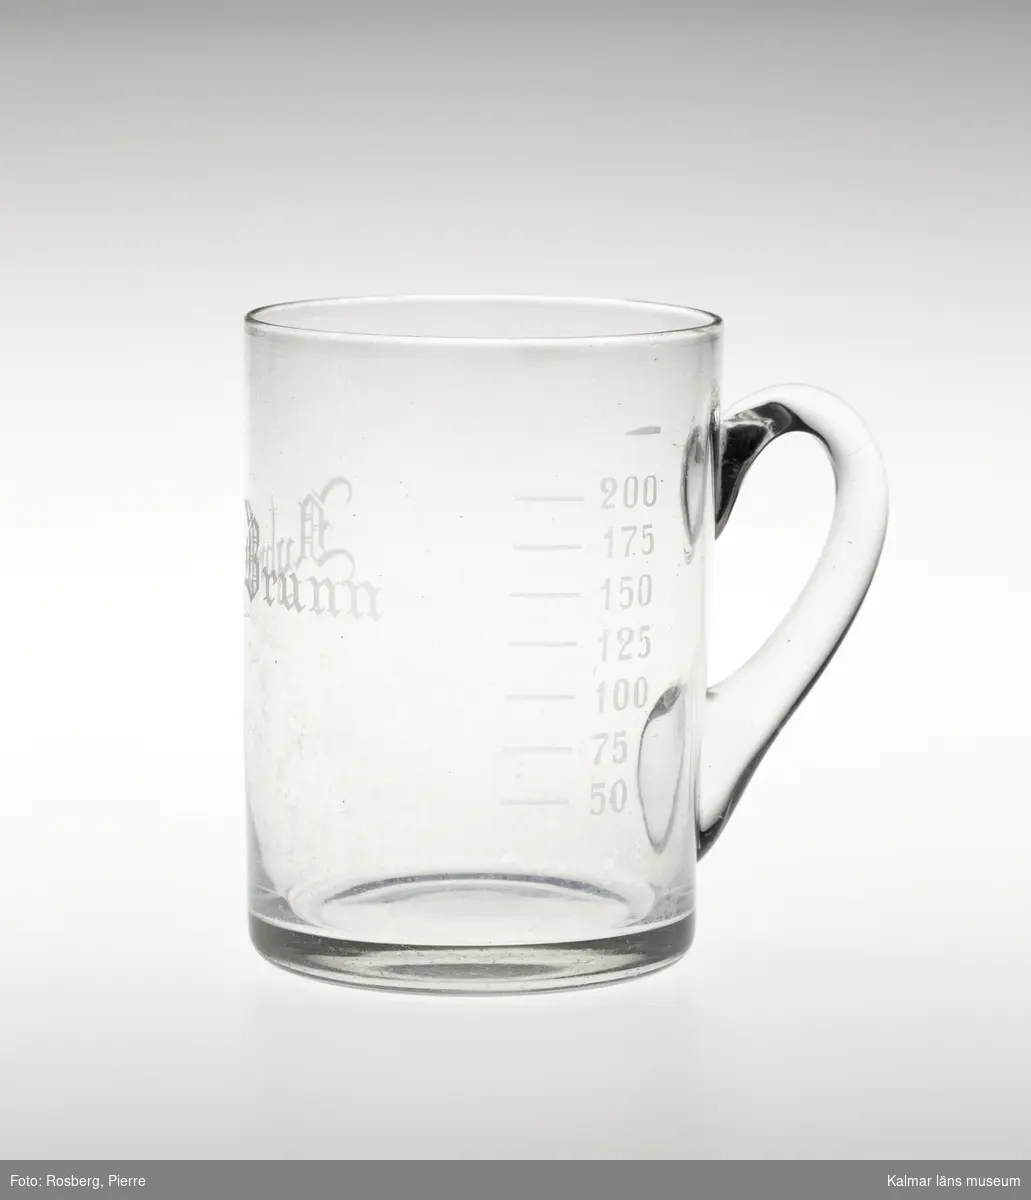 KLM 34599:1 Hankglas, av glas. Brunnsglas för Nybro Brunn och badanstalt, grundad 1883. Rakt glas med lodrät grepe. Något kupad botten. Graverad text och måttgradering, 50, 75, 100, 125, 150, 175, 200. Text: Nybro Brunn.